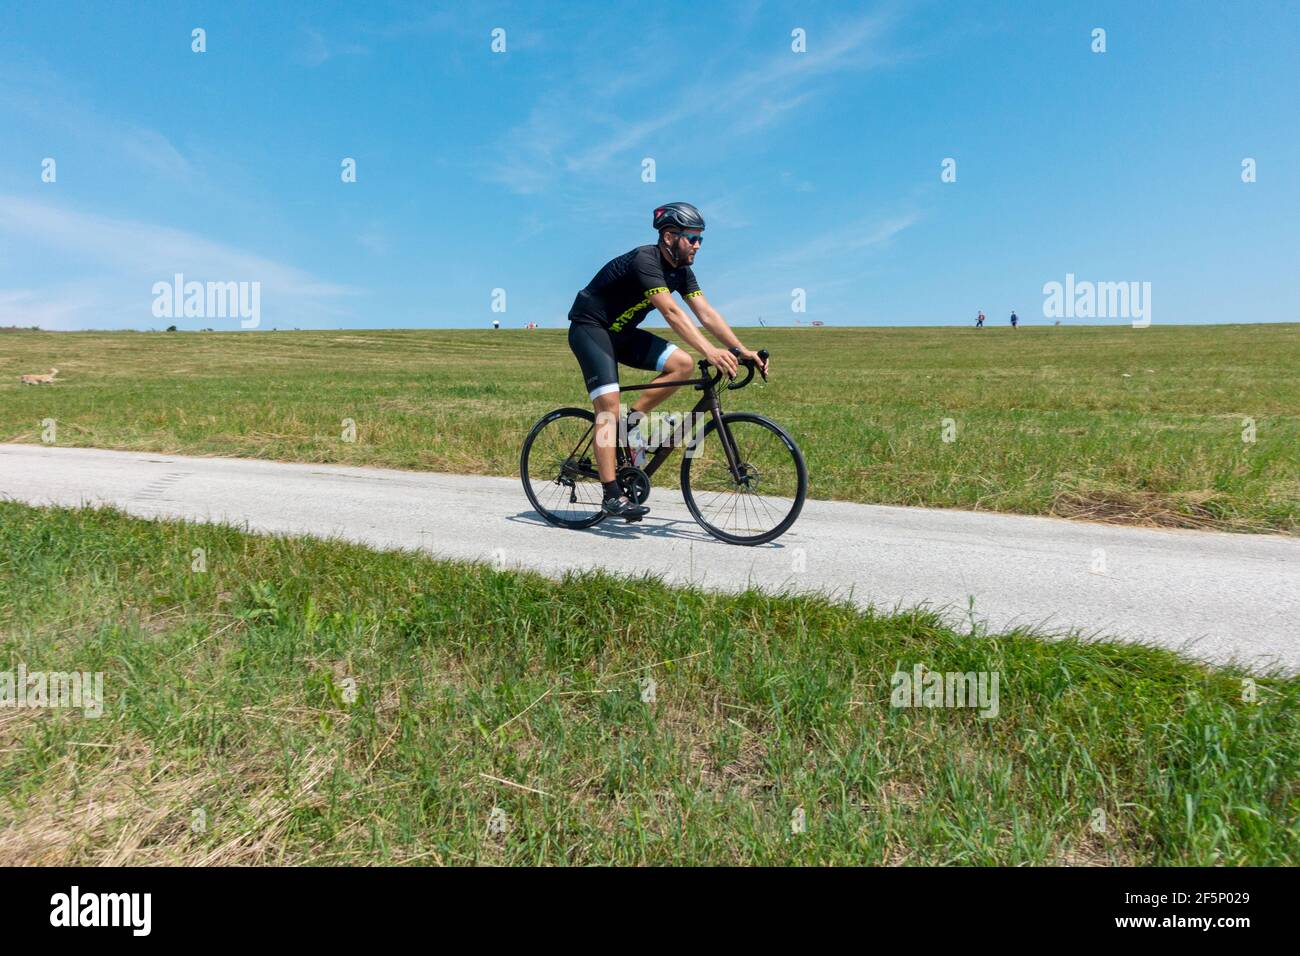 Cycliste unique sur la route rurale, mode de vie actif, homme vélo seul scène de vélo Banque D'Images